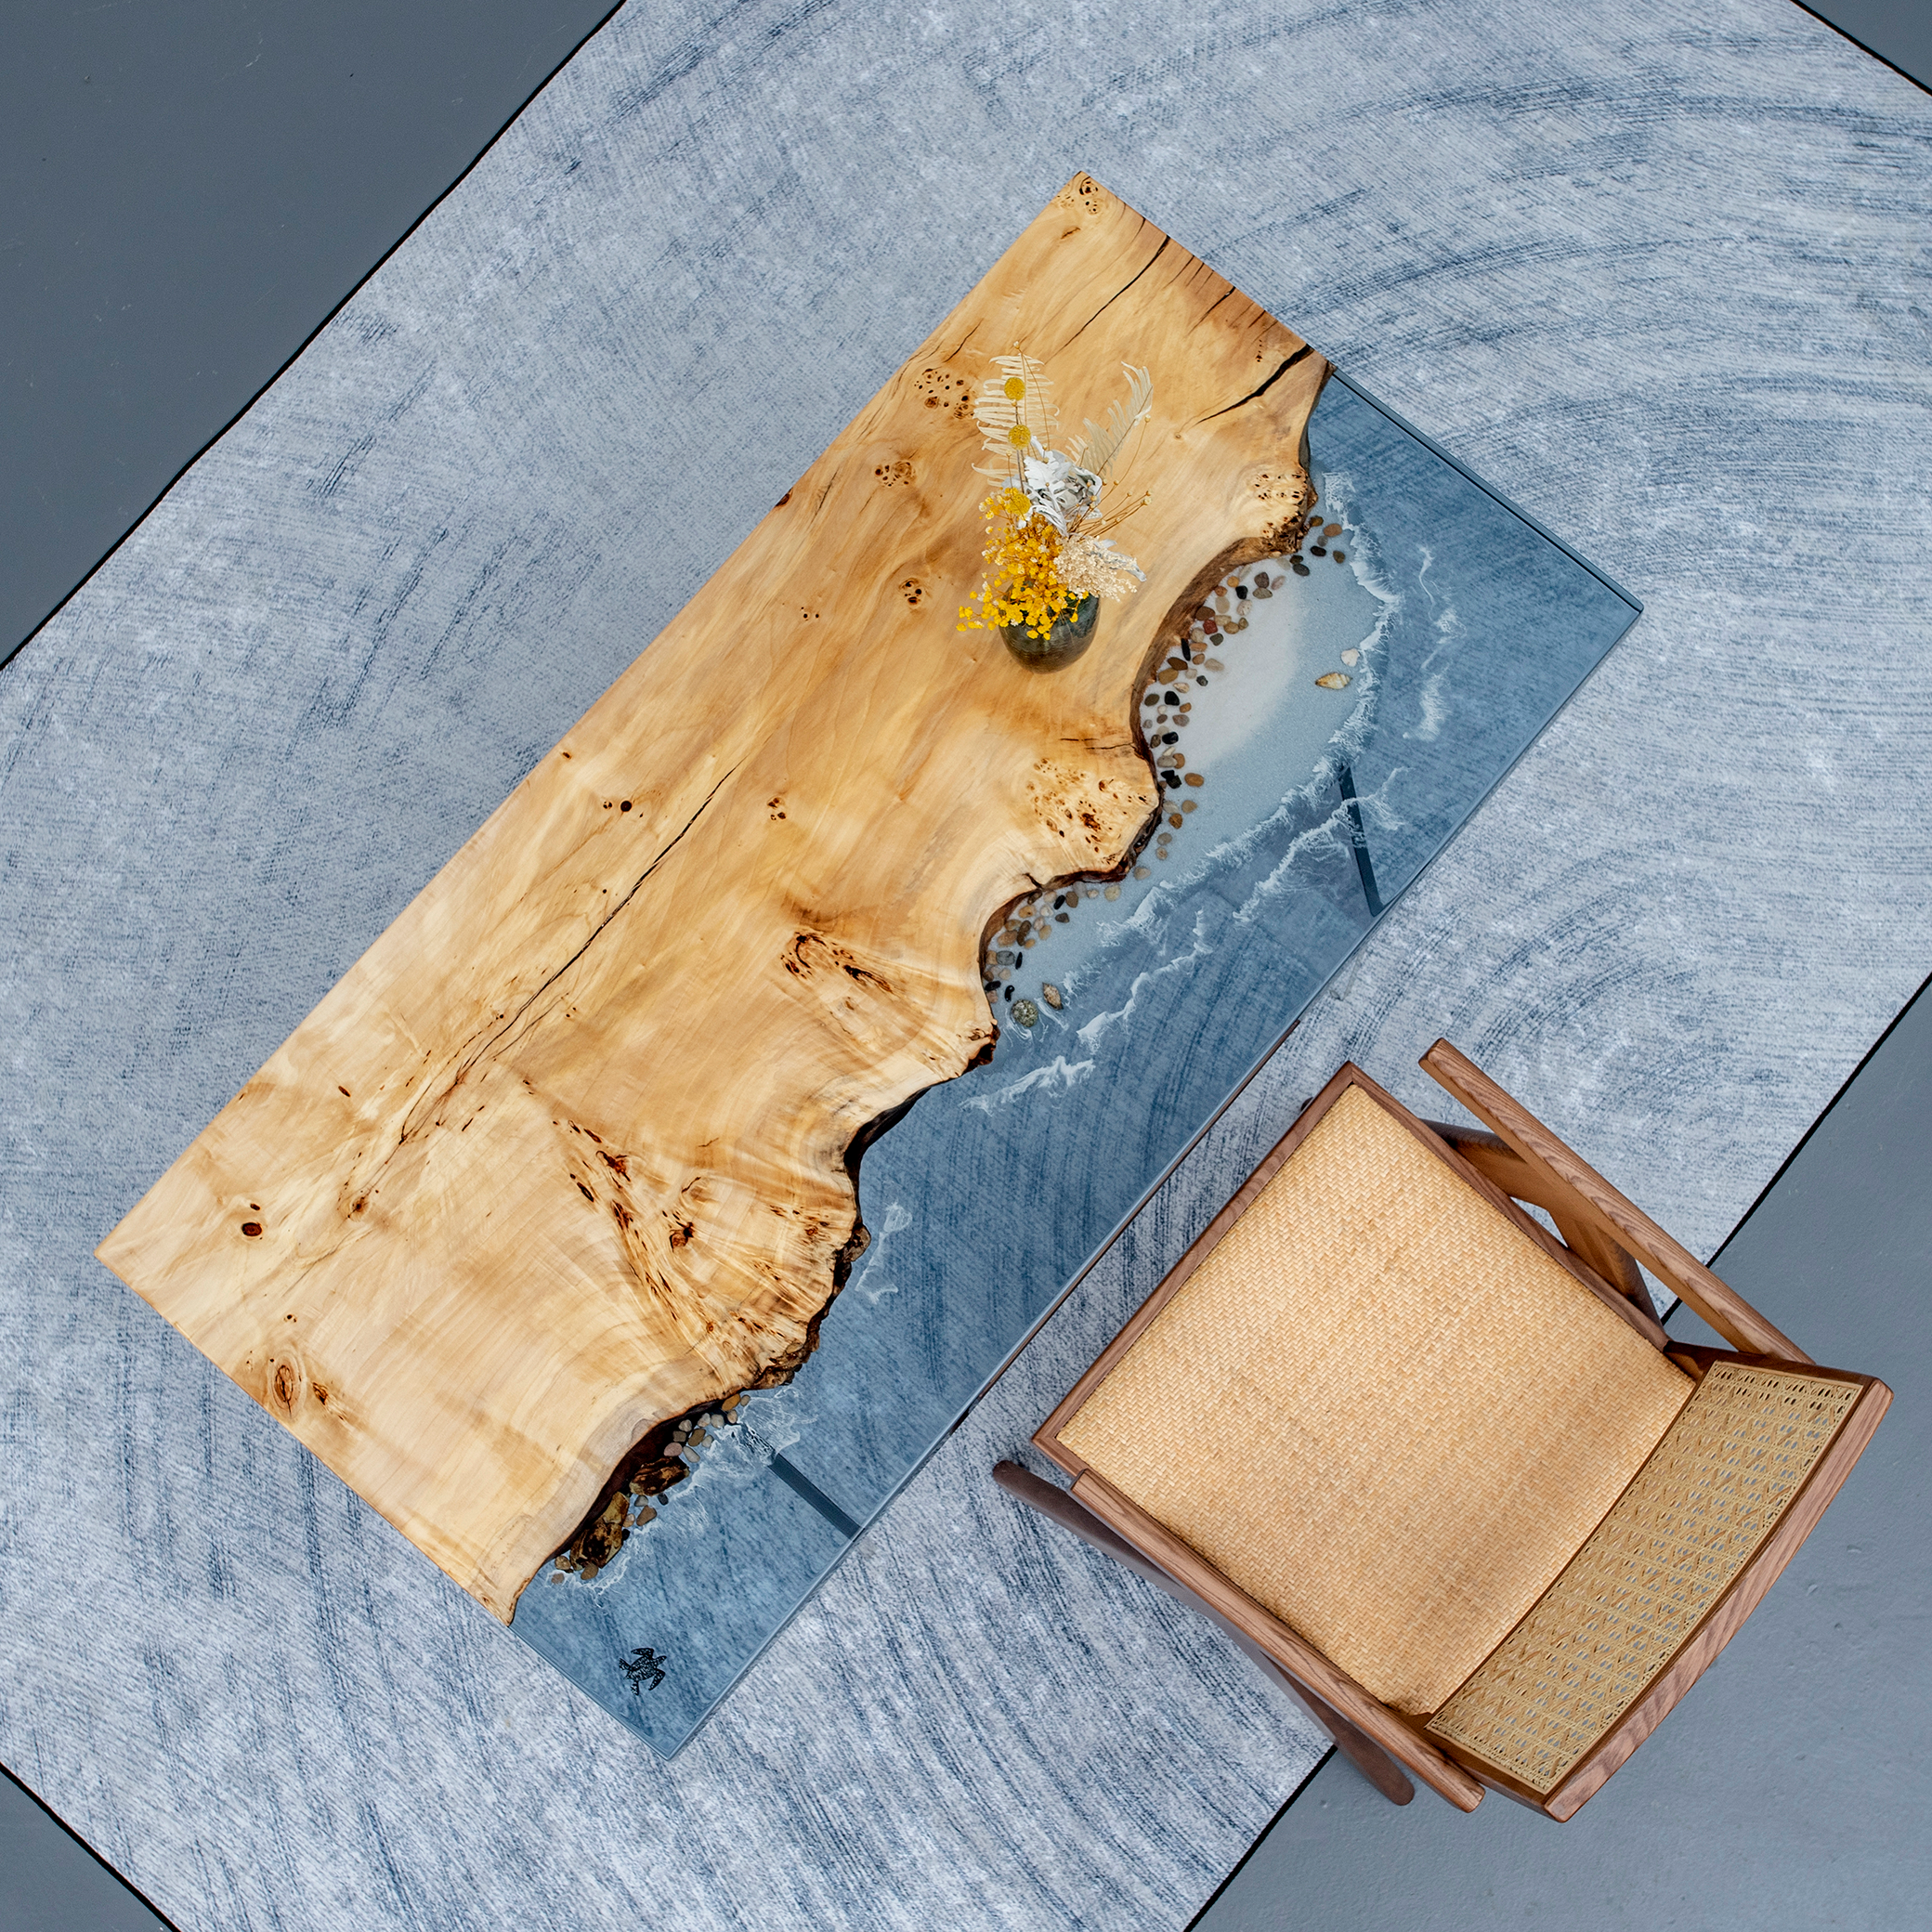 Resina epossidica in legno di pioppo per tavoli, idee per tavoli in resina epossidica, tavolo epossidico in pioppo